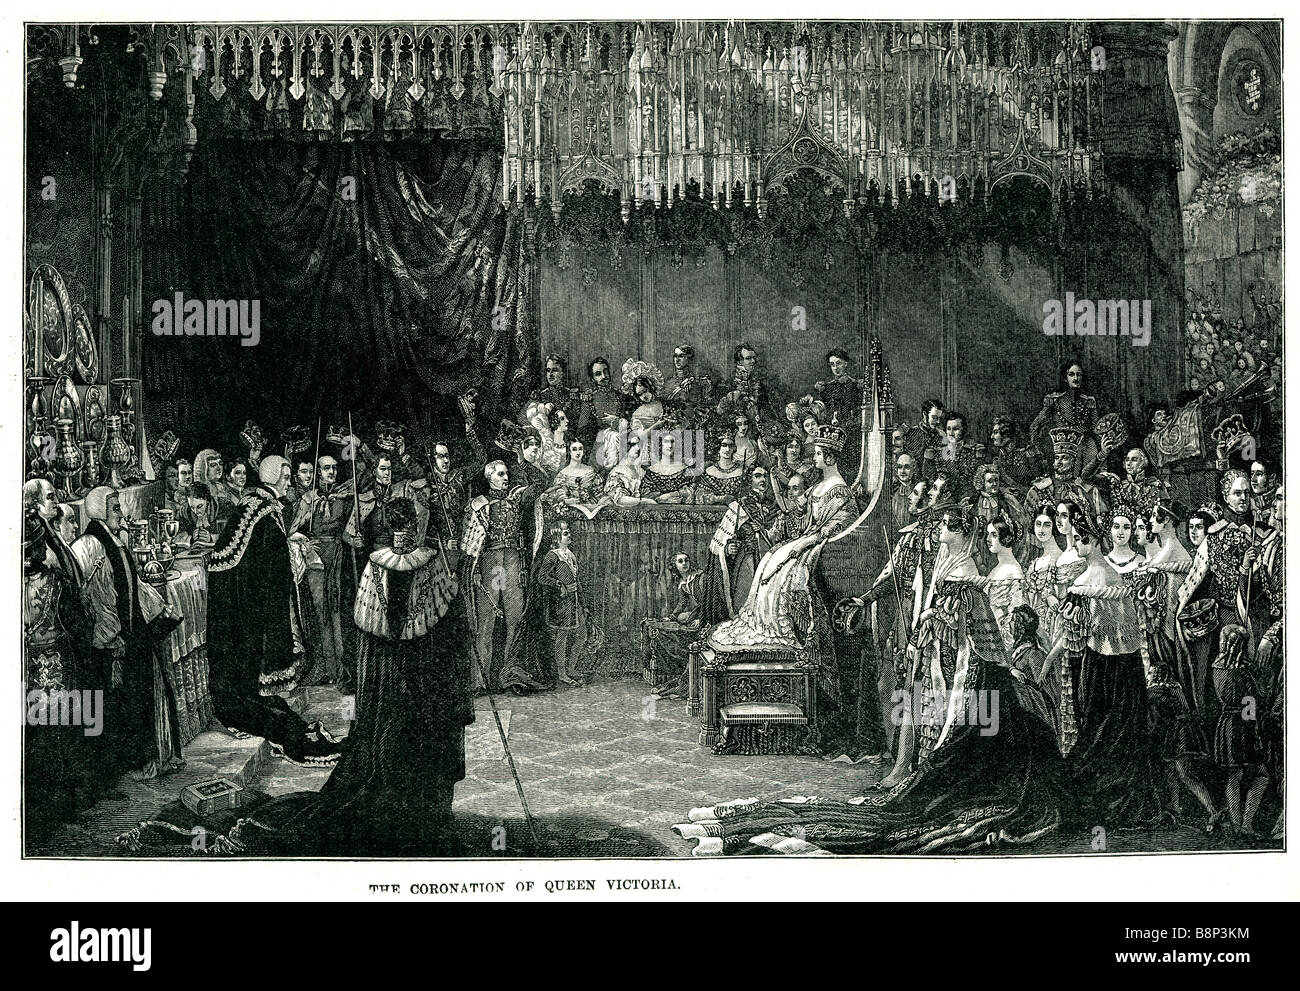 Krönung Königin Victoria 1838 Alexandrina Vereinigtes Königreich Großbritannien Irland Kaiserin Indien Britisches Raj Stockfoto